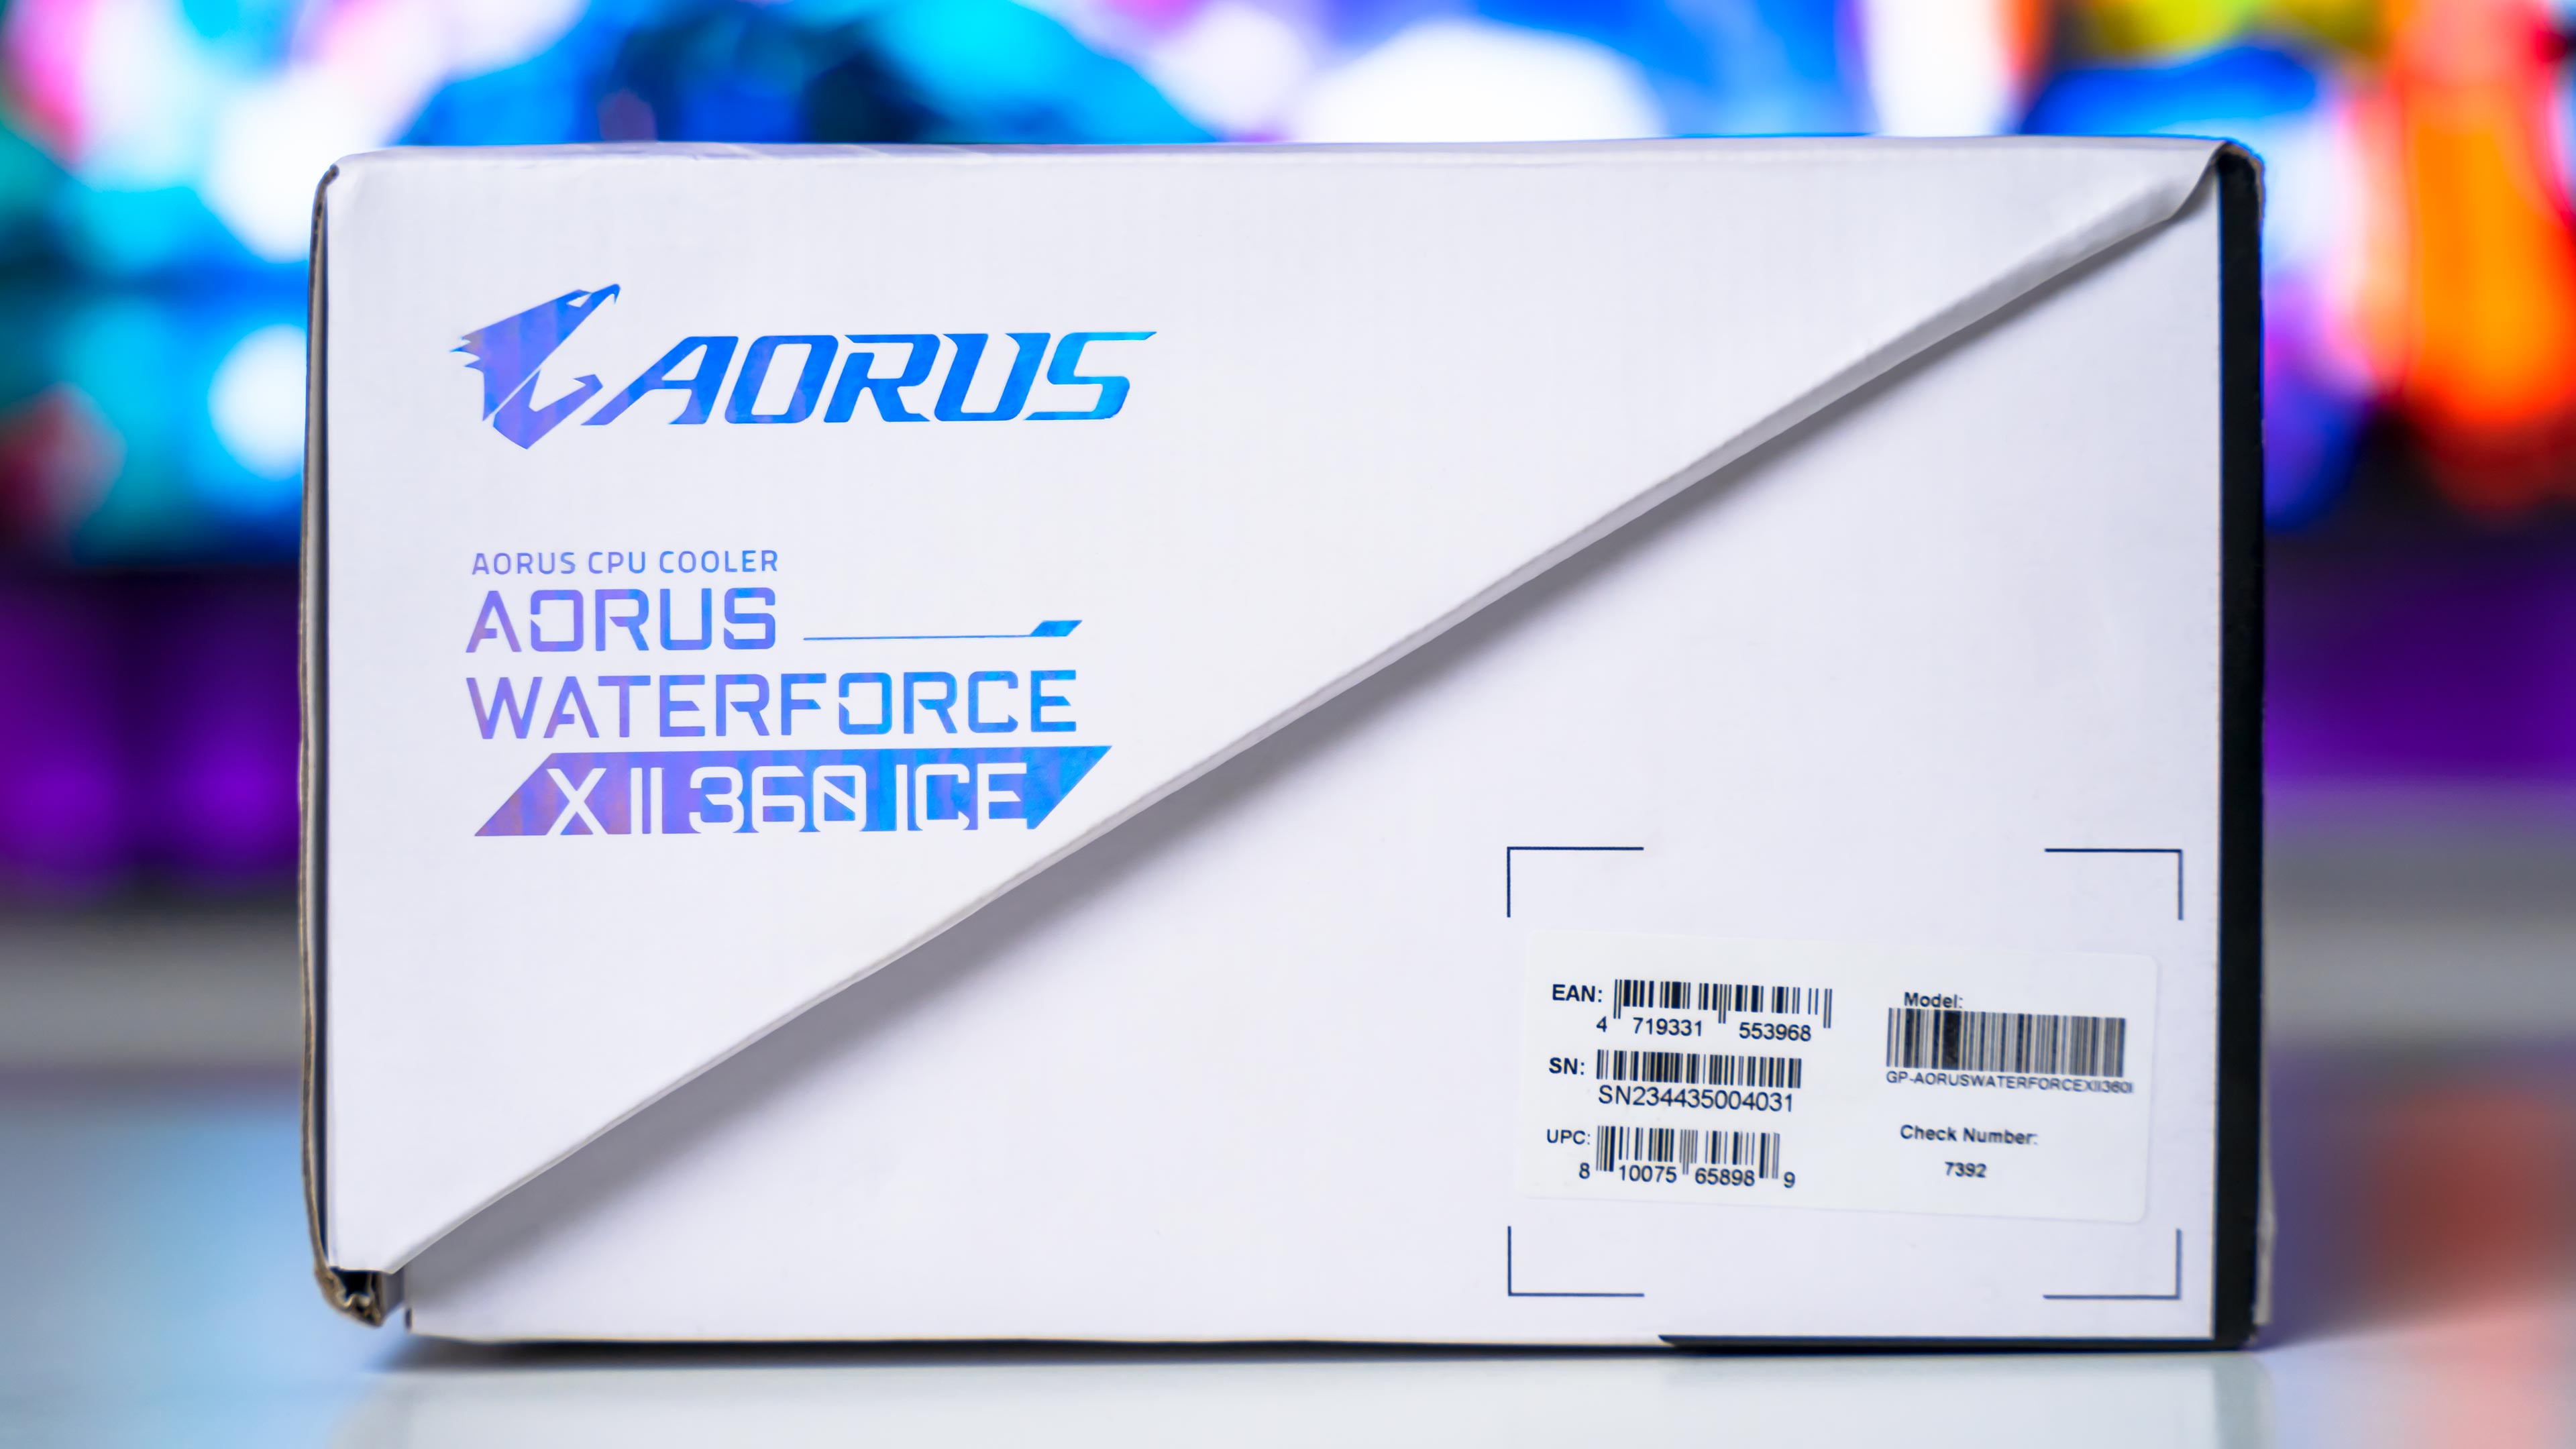 Aorus Waterforce X II 360 Ice Box (5)